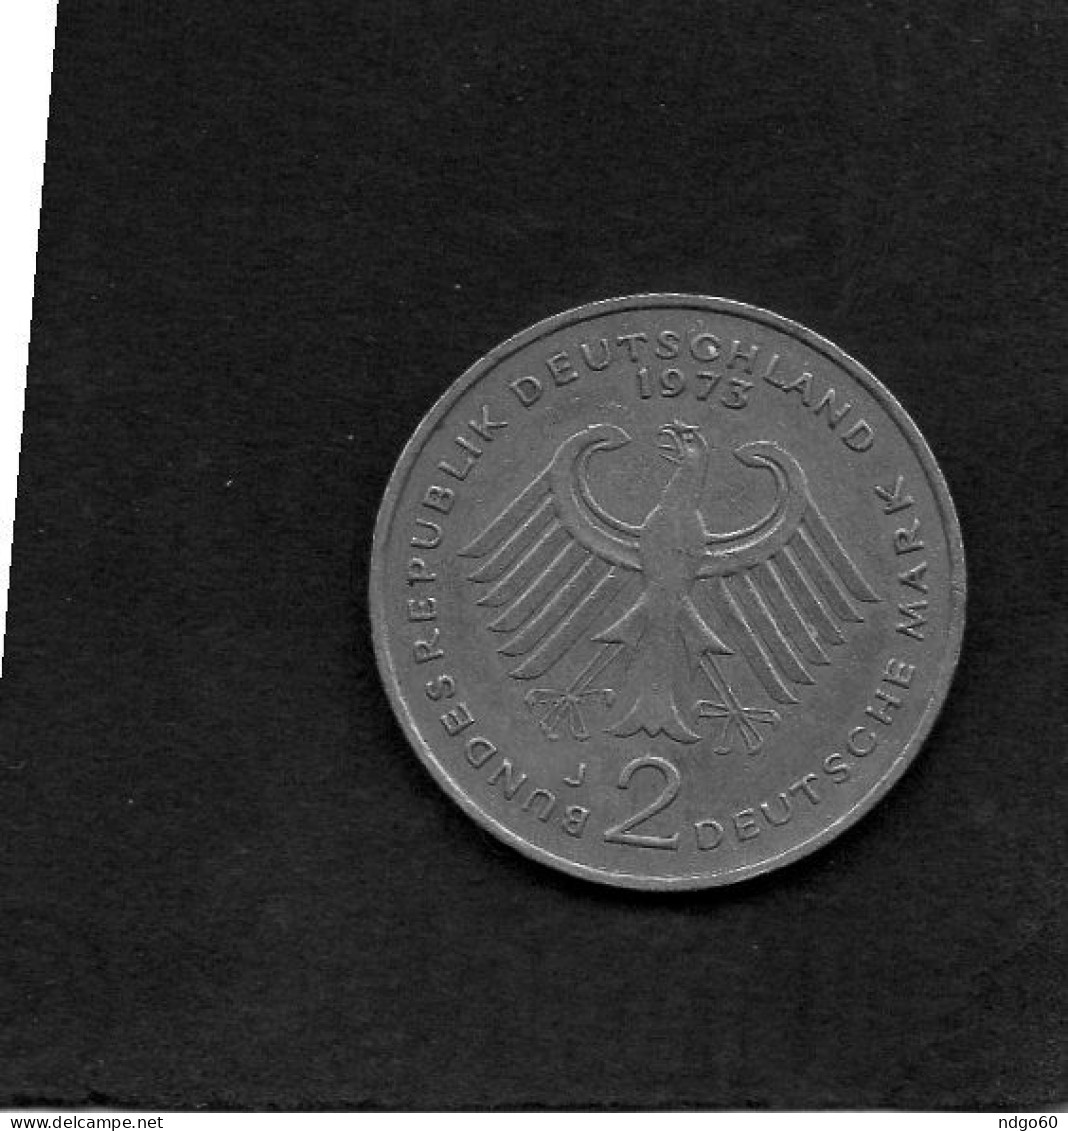 Allemagne - 2 Deutsche Mark 1969 - K. Adenauer - 2 Mark